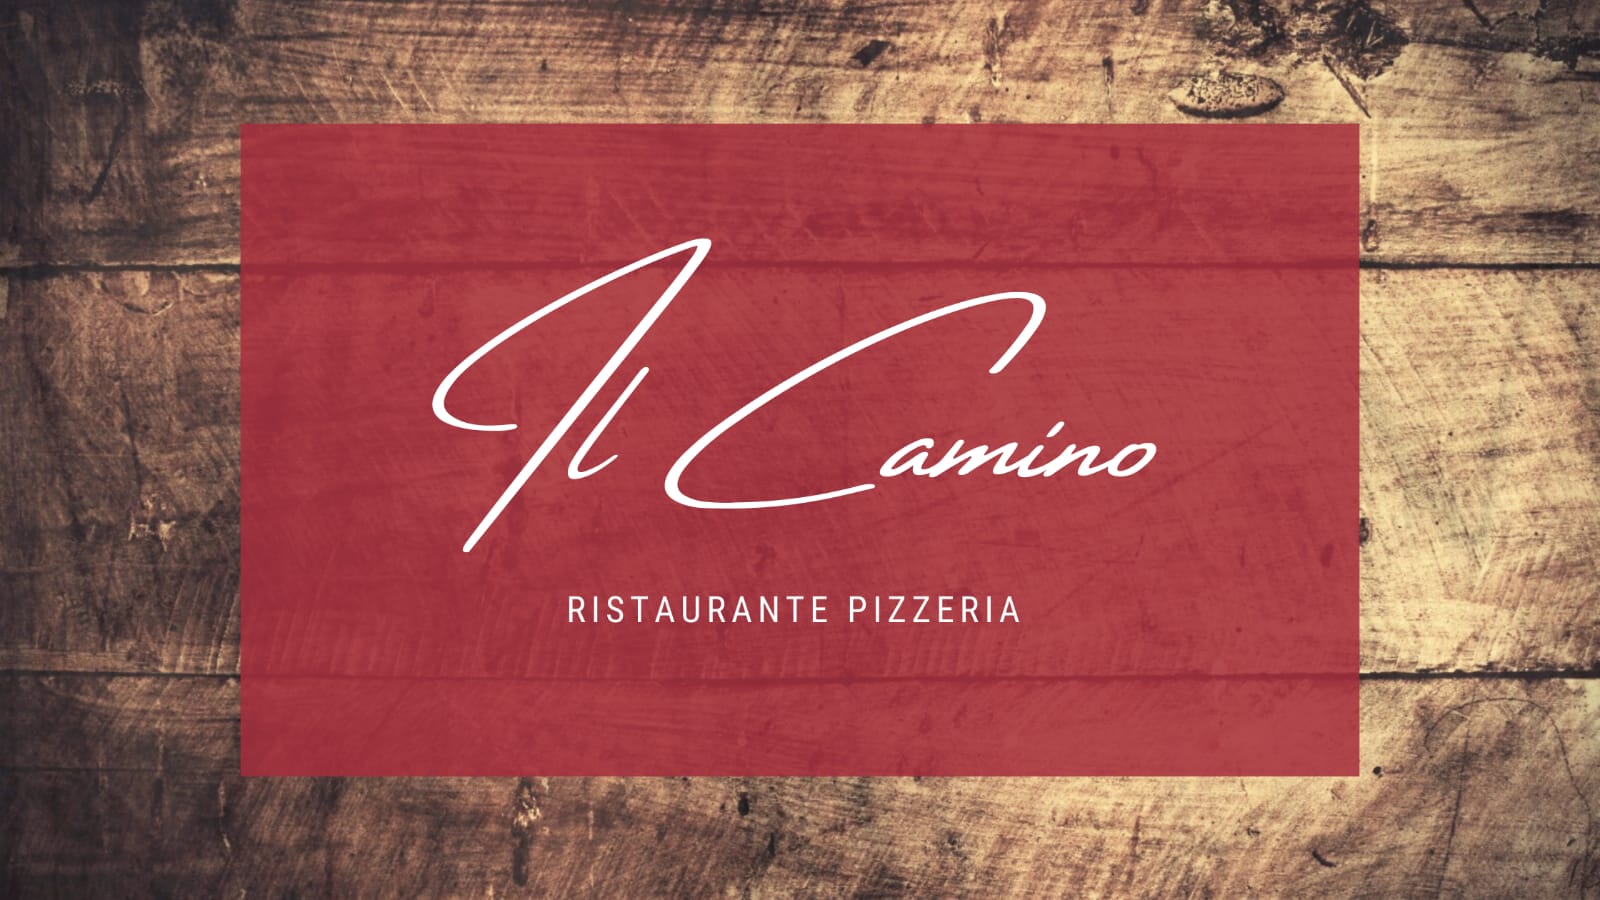 Restaurant-Name und Logo